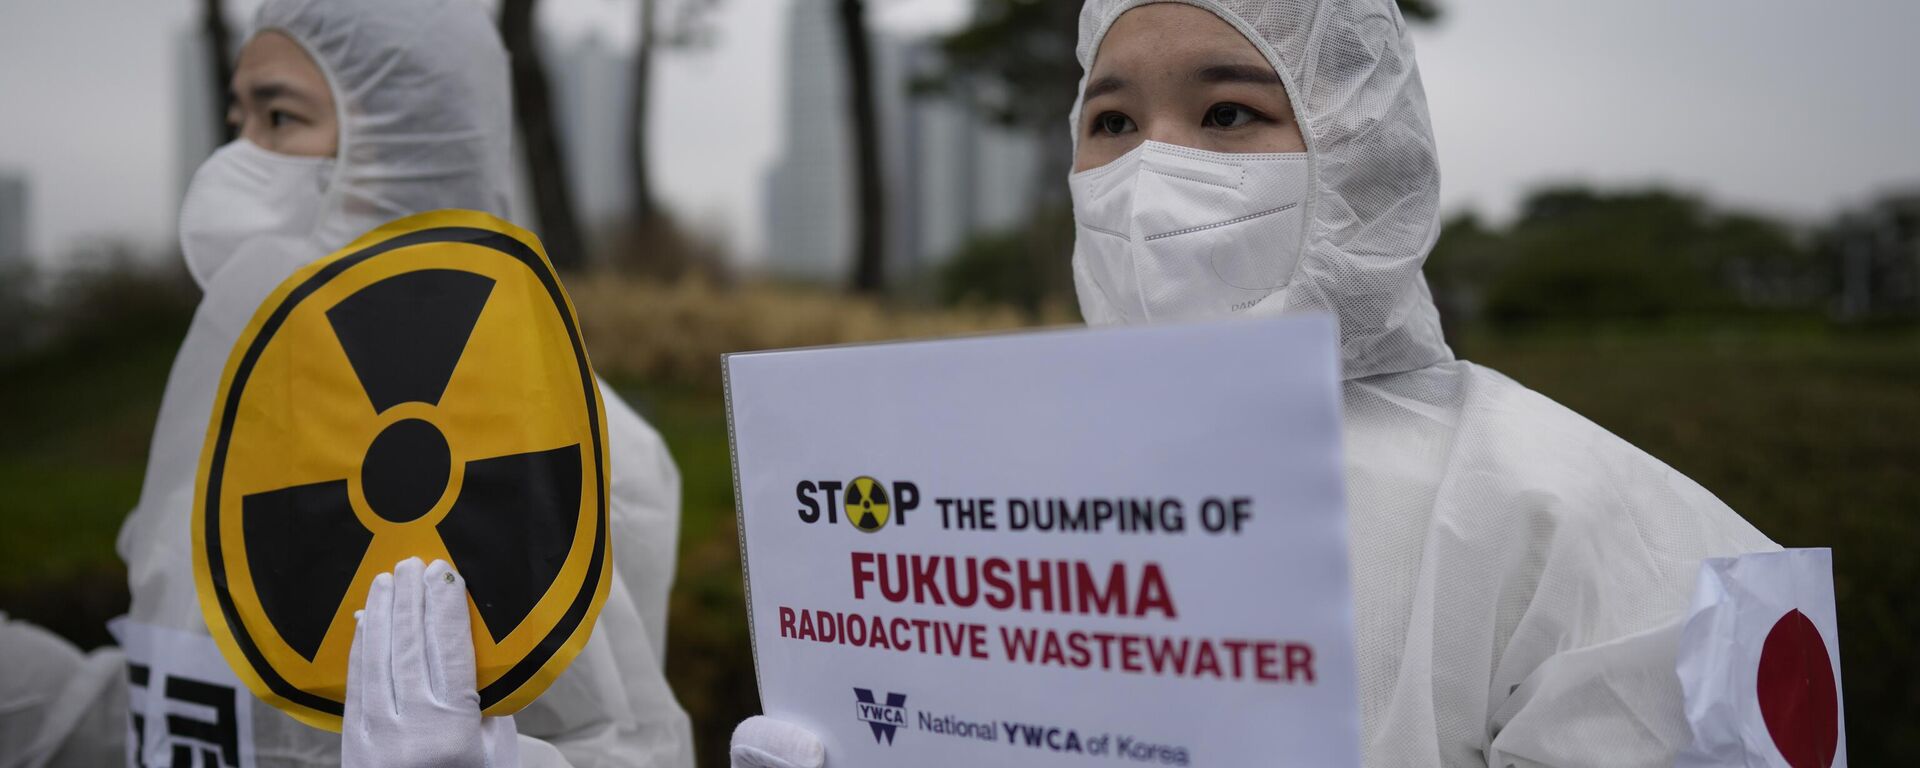 La gente sostiene pancartas durante una manifestación exigiendo la retirada de la decisión del Пobierno japonés de liberar agua radiactiva tratada de Fukushima, en Seúl, Corea del Sur, el 6 de abril de 2023 - Sputnik Mundo, 1920, 25.08.2023